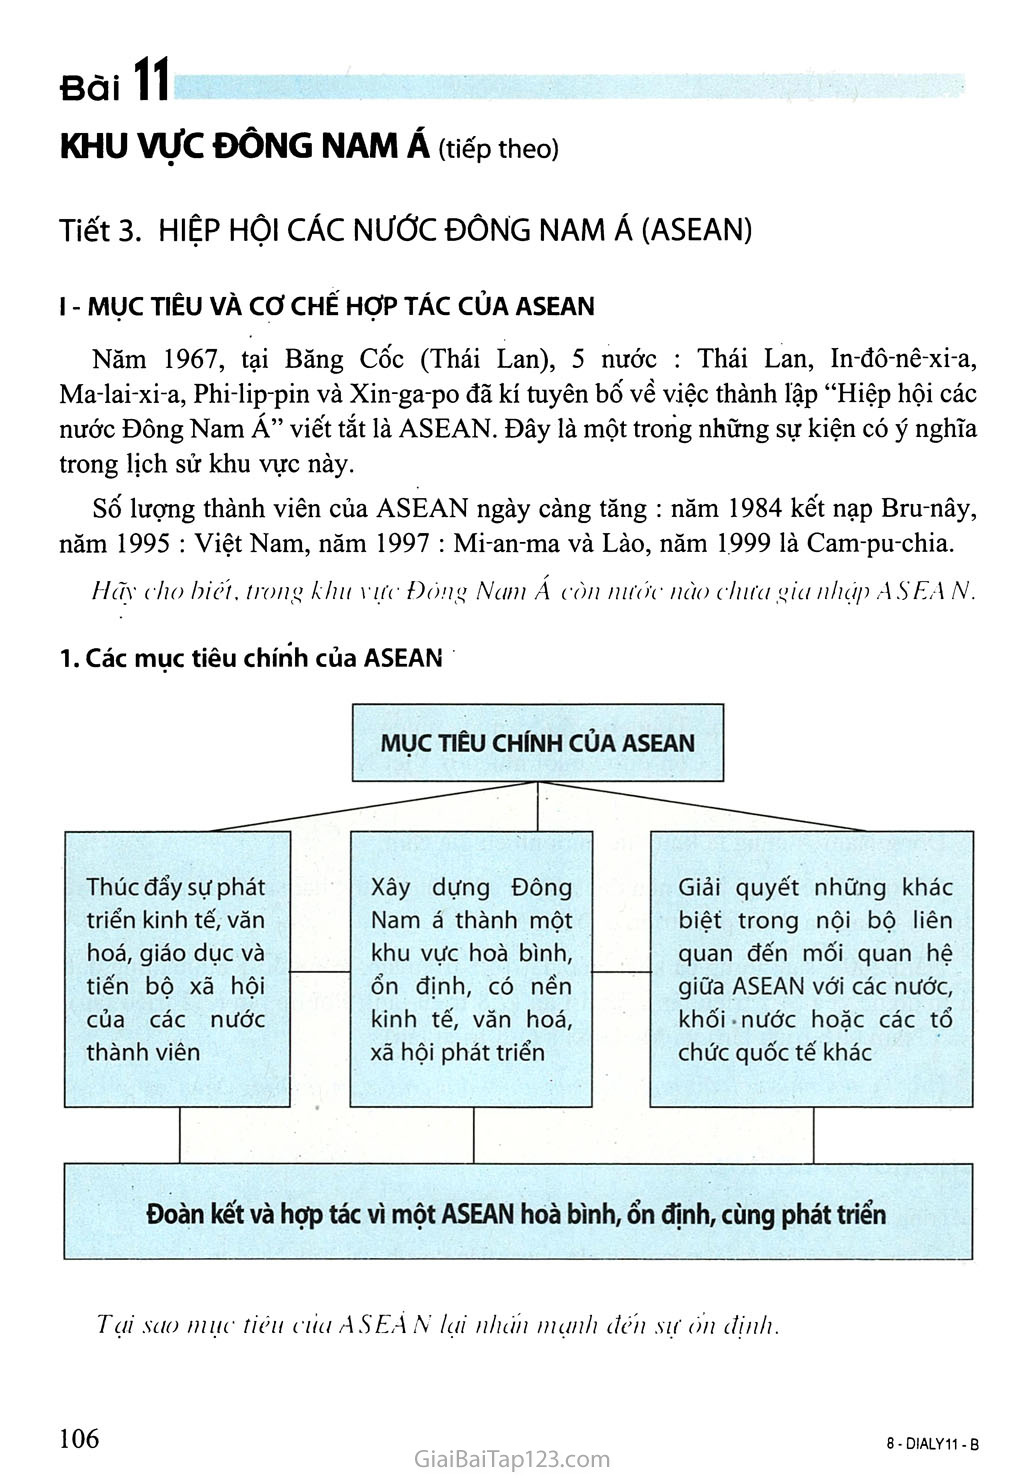 Tiết 3. Hiệp hội các nước Đông Nam Á (ASEAN) trang 1